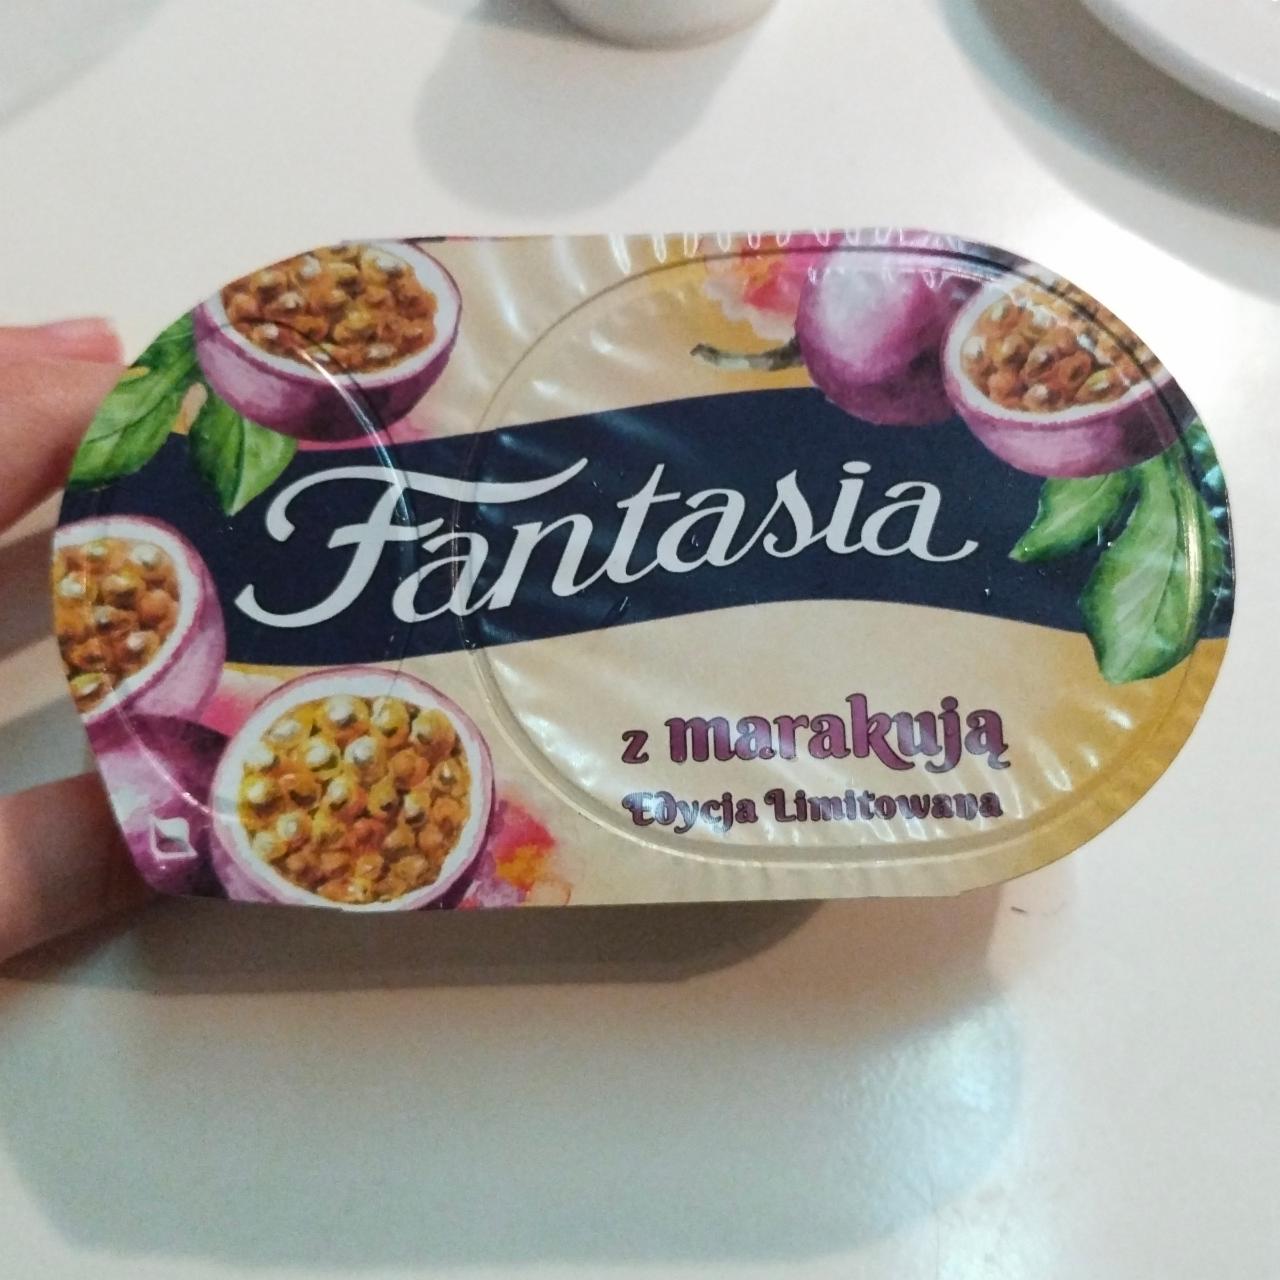 Фото - йогурт кремовый с маракуйей Fantasia